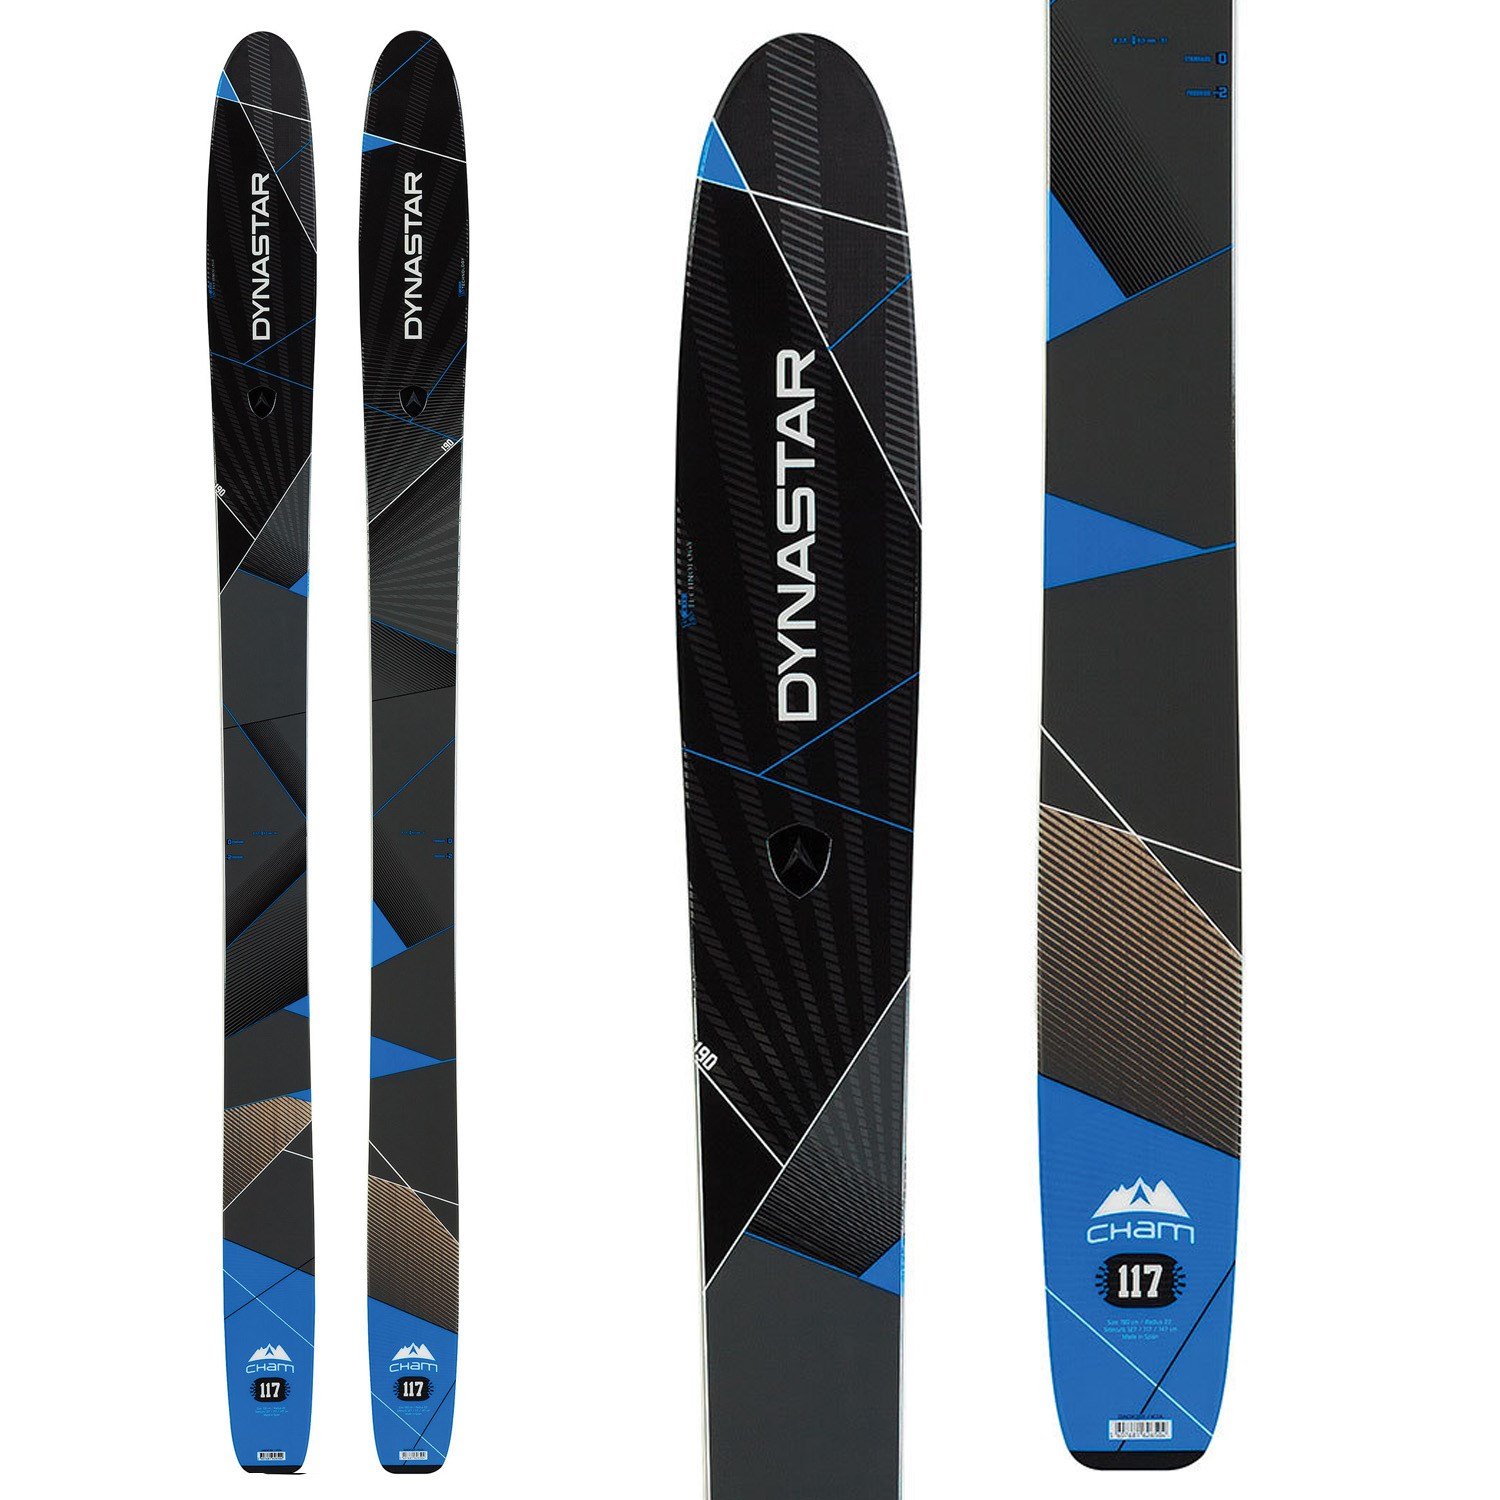 Dynastar Cham 117 Skis 2015 | evo